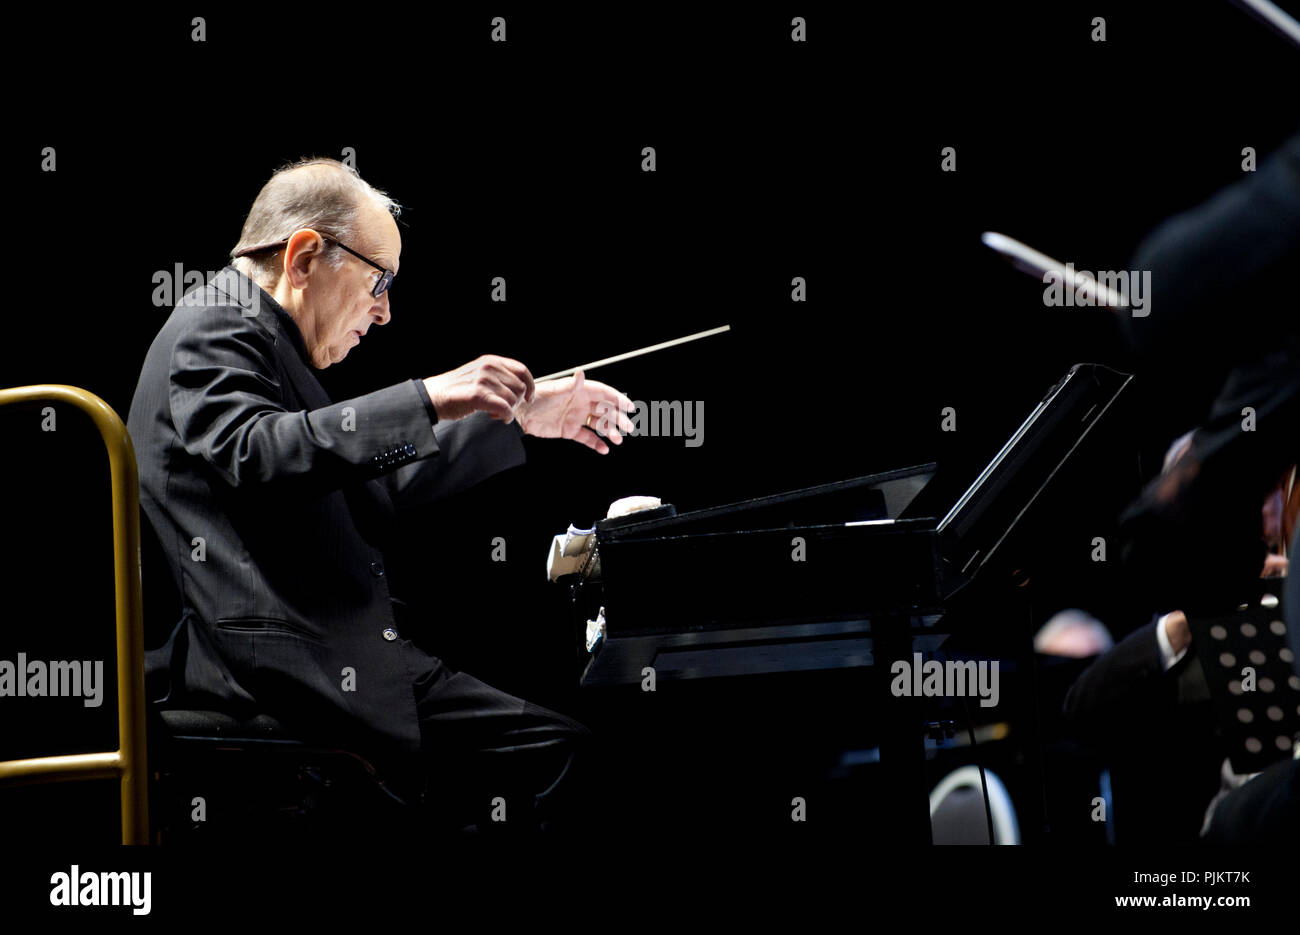 Le compositeur italien Ennio Morricone effectuant ses 60 années de musique World Tour concert au Sportpaleis, Anvers (Belgique, 20/02/2016) Banque D'Images